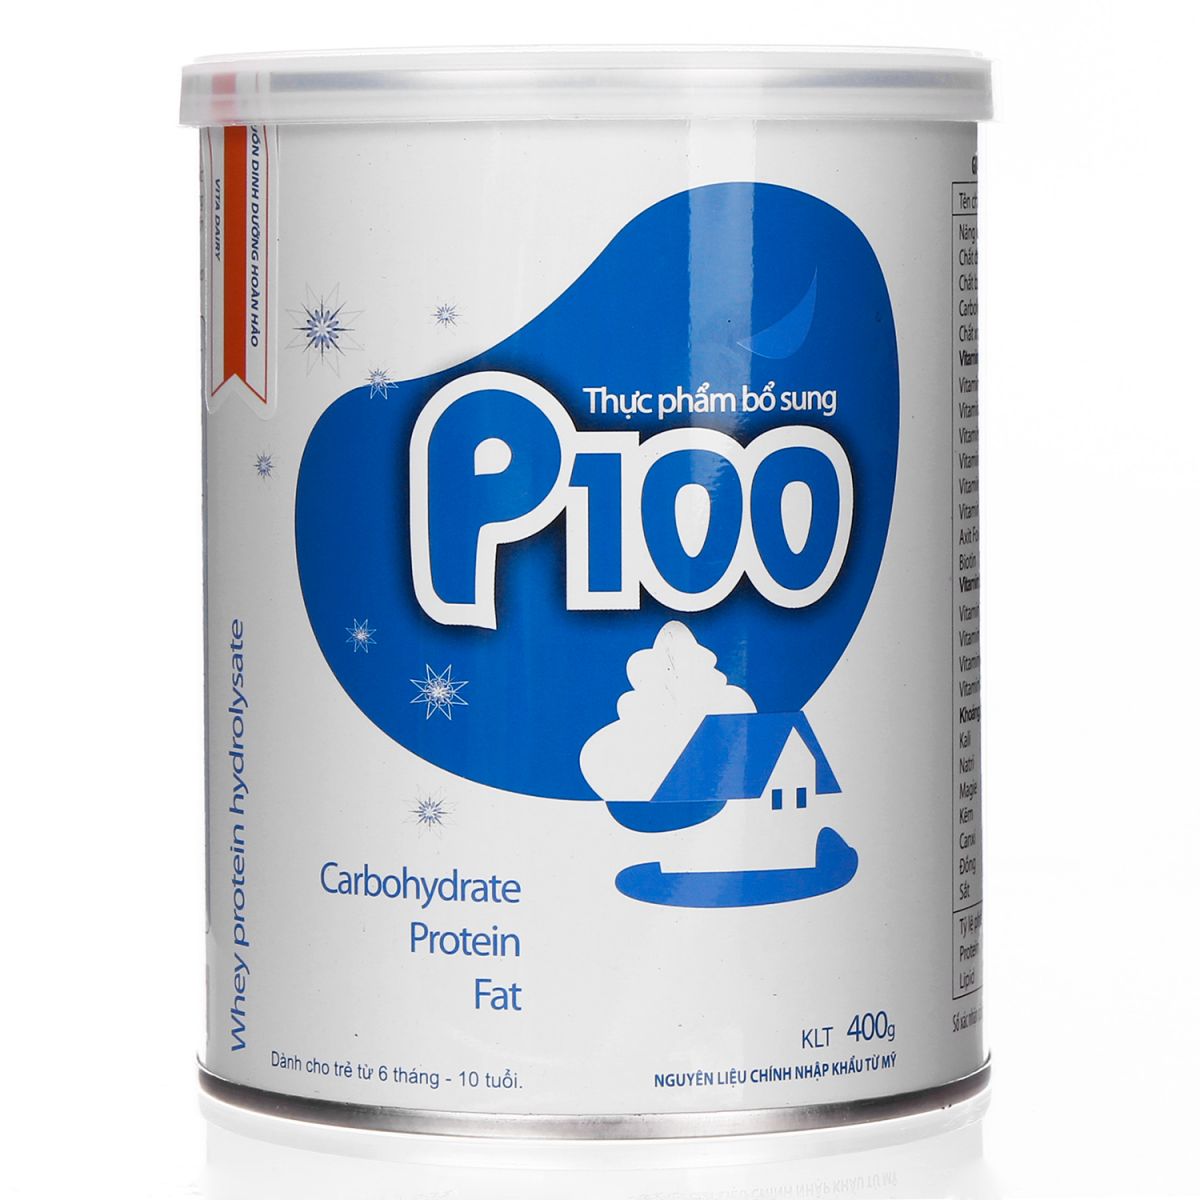 Sữa P100 của viện dinh dưỡng DỄ UỐNG, giúp bé tăng cân ổn định